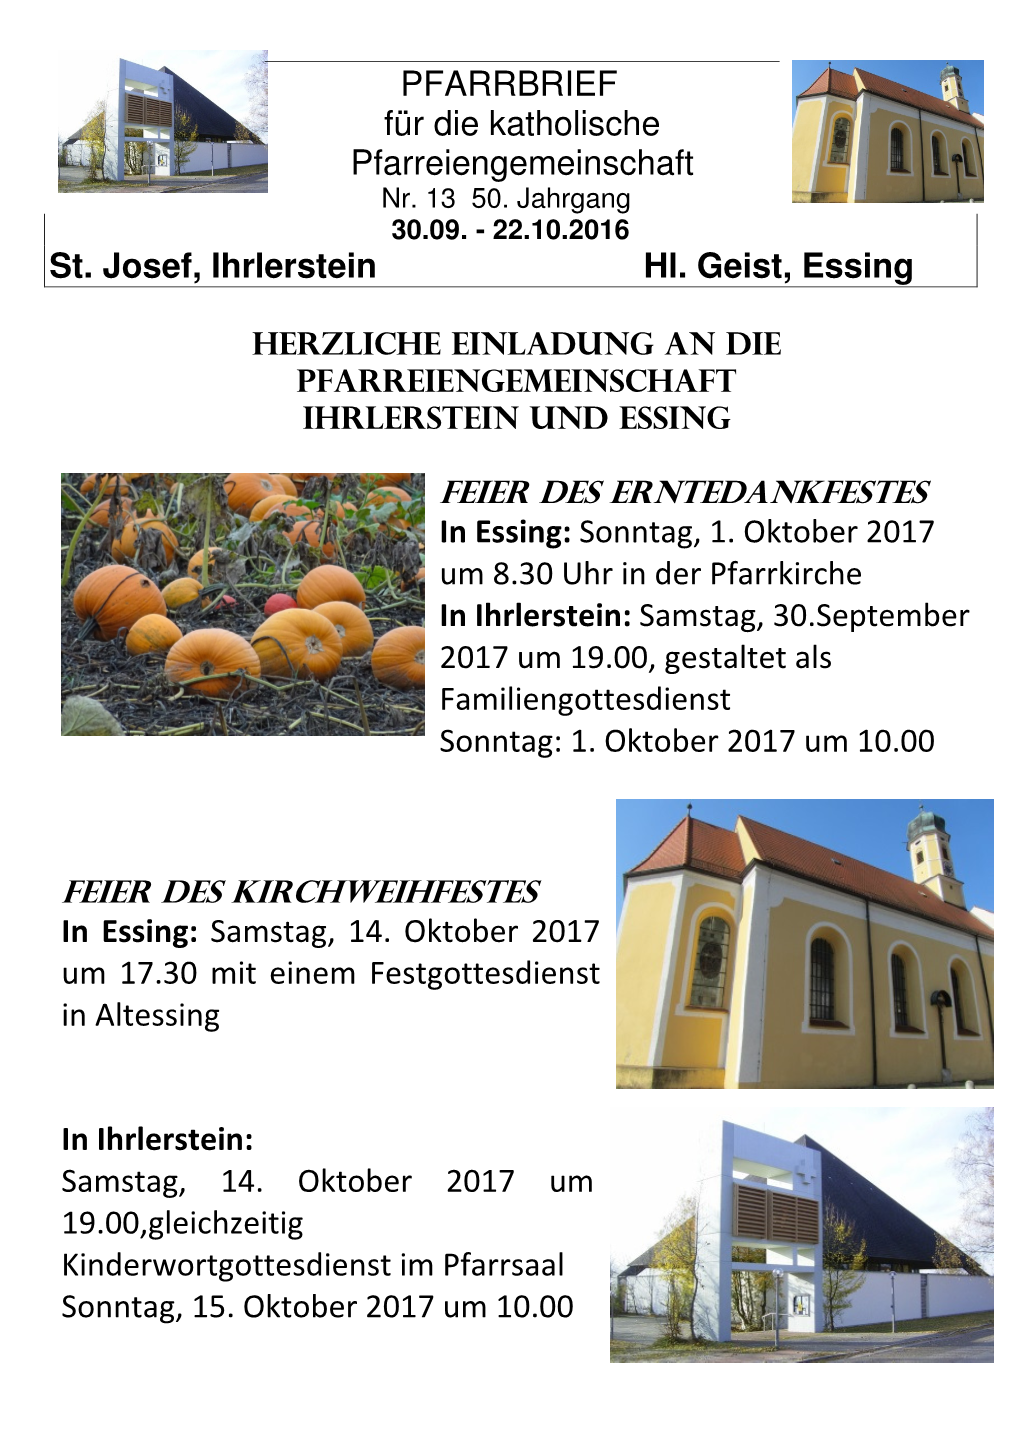 St. Josef, Ihrlerstein Hl. Geist, Essing